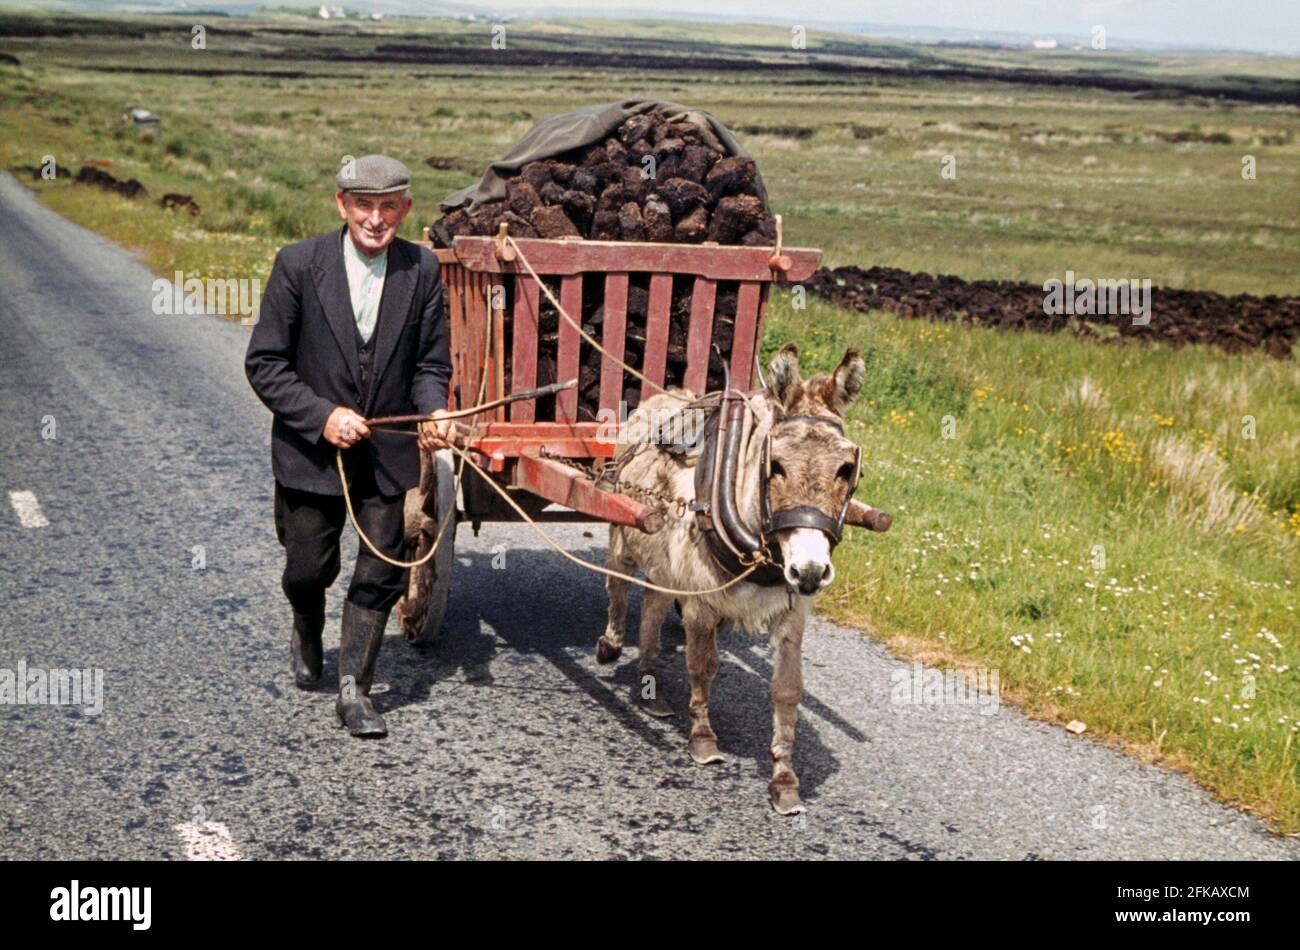 Un homme recueillant de la tourbe dans les tourbières près de Lisdoonvarna (Lios Dúin Bhearna), comté de Clare, Irlande dans les années 1960. La tourbe se trouve sur un chariot tiré par un âne. Les ânes étaient un site commun sur les fermes en Irlande. L'animal porte des bottes spéciales (bottes de sabot) pour lui permettre de travailler sur le terrain boggy des tourbières. La tourbe sèche a été couramment brûlée pour le chauffage domestique. Cette image est tirée d'une vieille transparence de couleur amateur – une photographie vintage des années 1960. Banque D'Images